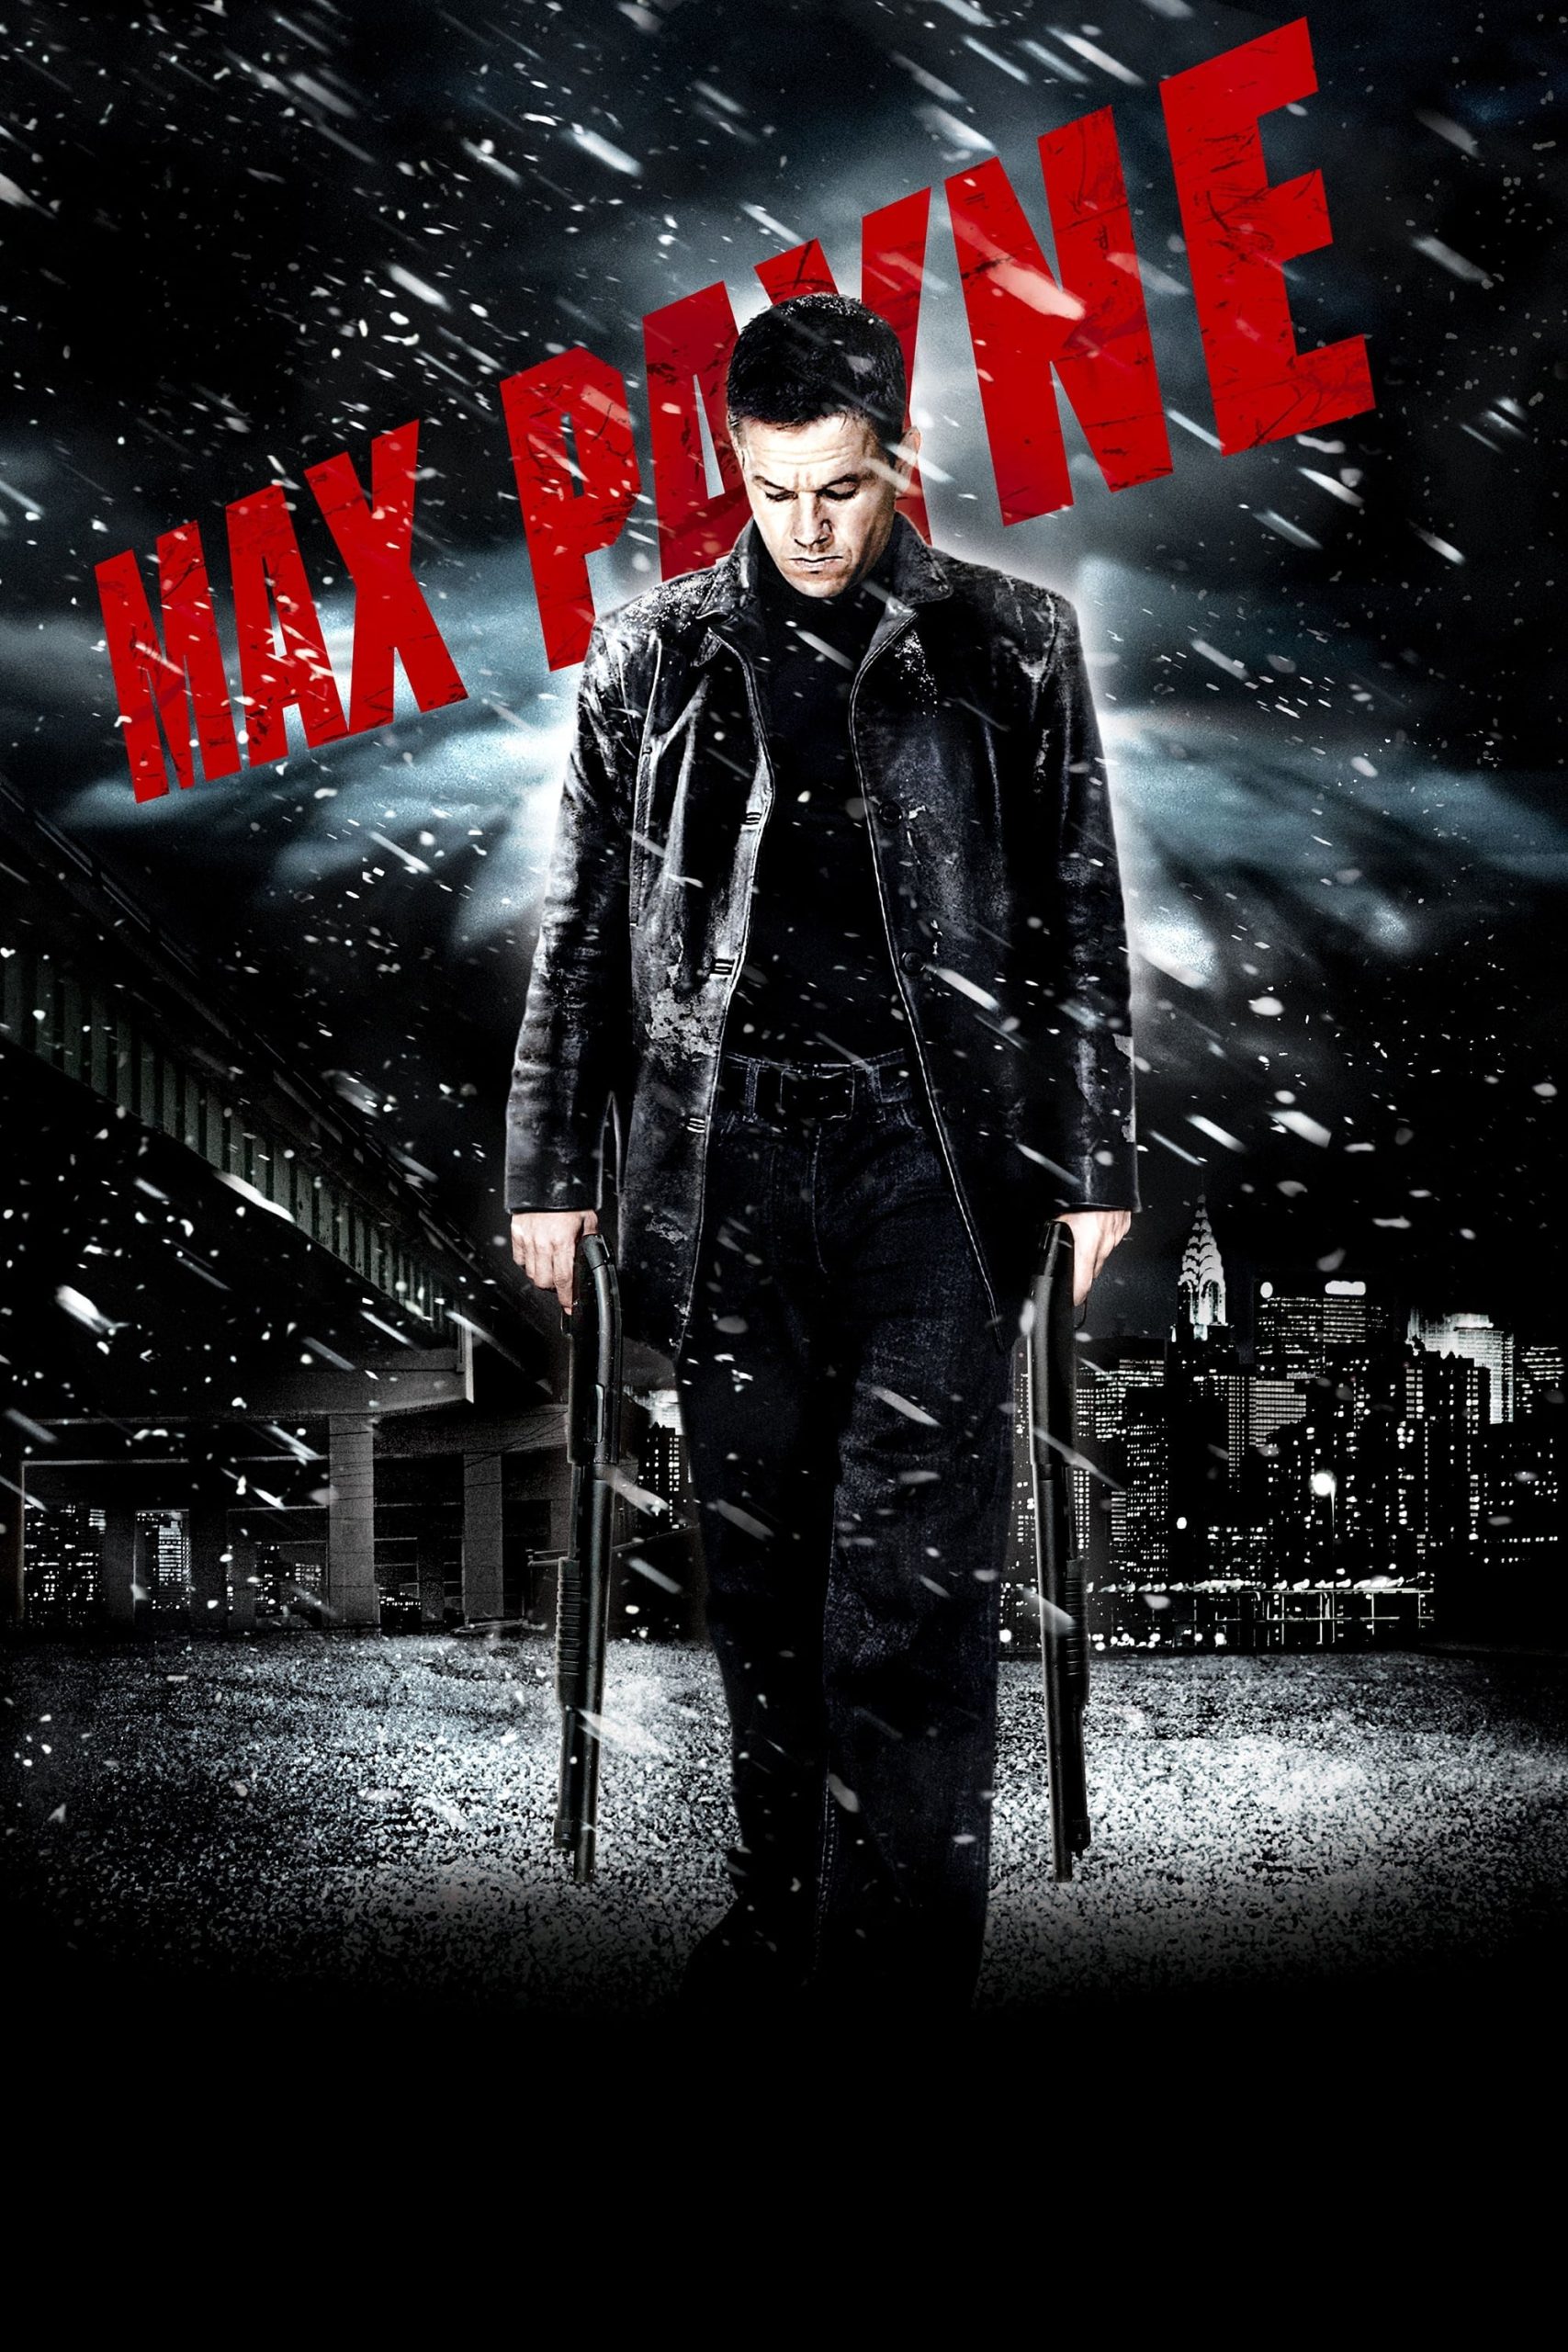 ดูหนังออนไลน์ฟรี Max Payne ฅนมหากาฬถอนรากทรชน